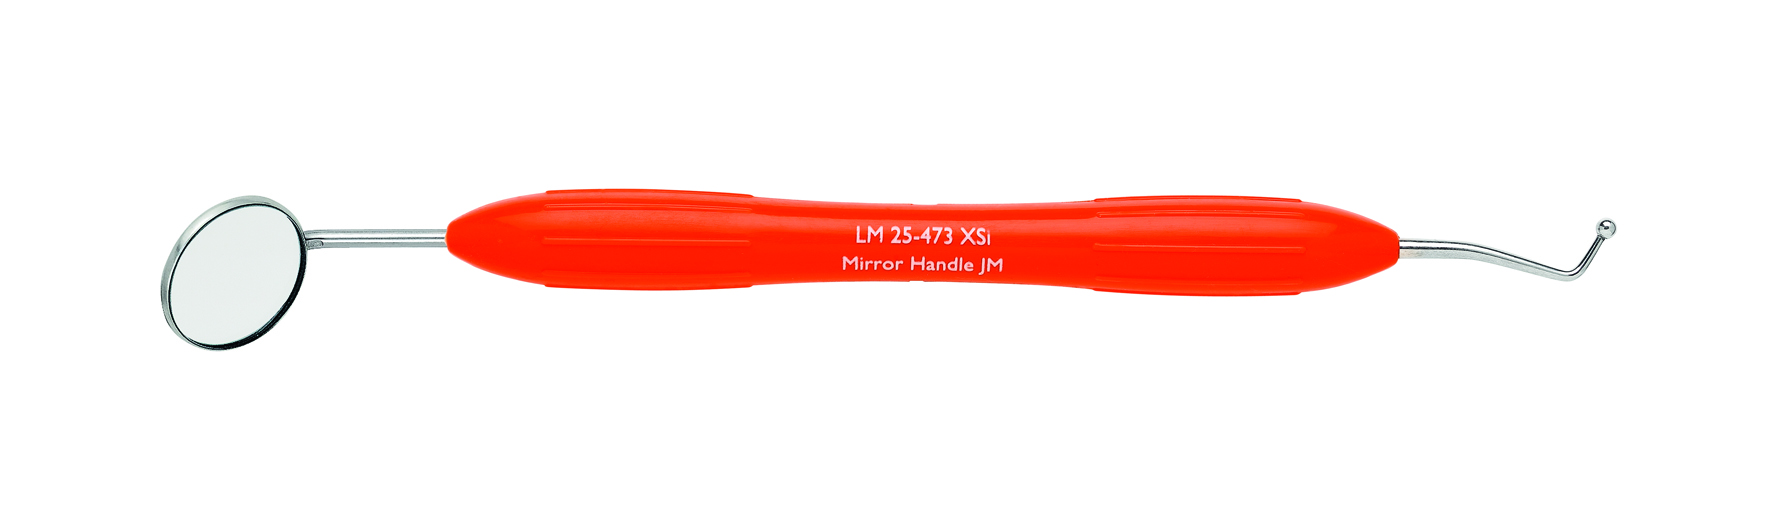 Ручка для зеркала стоматологического LM 25-473 XSI